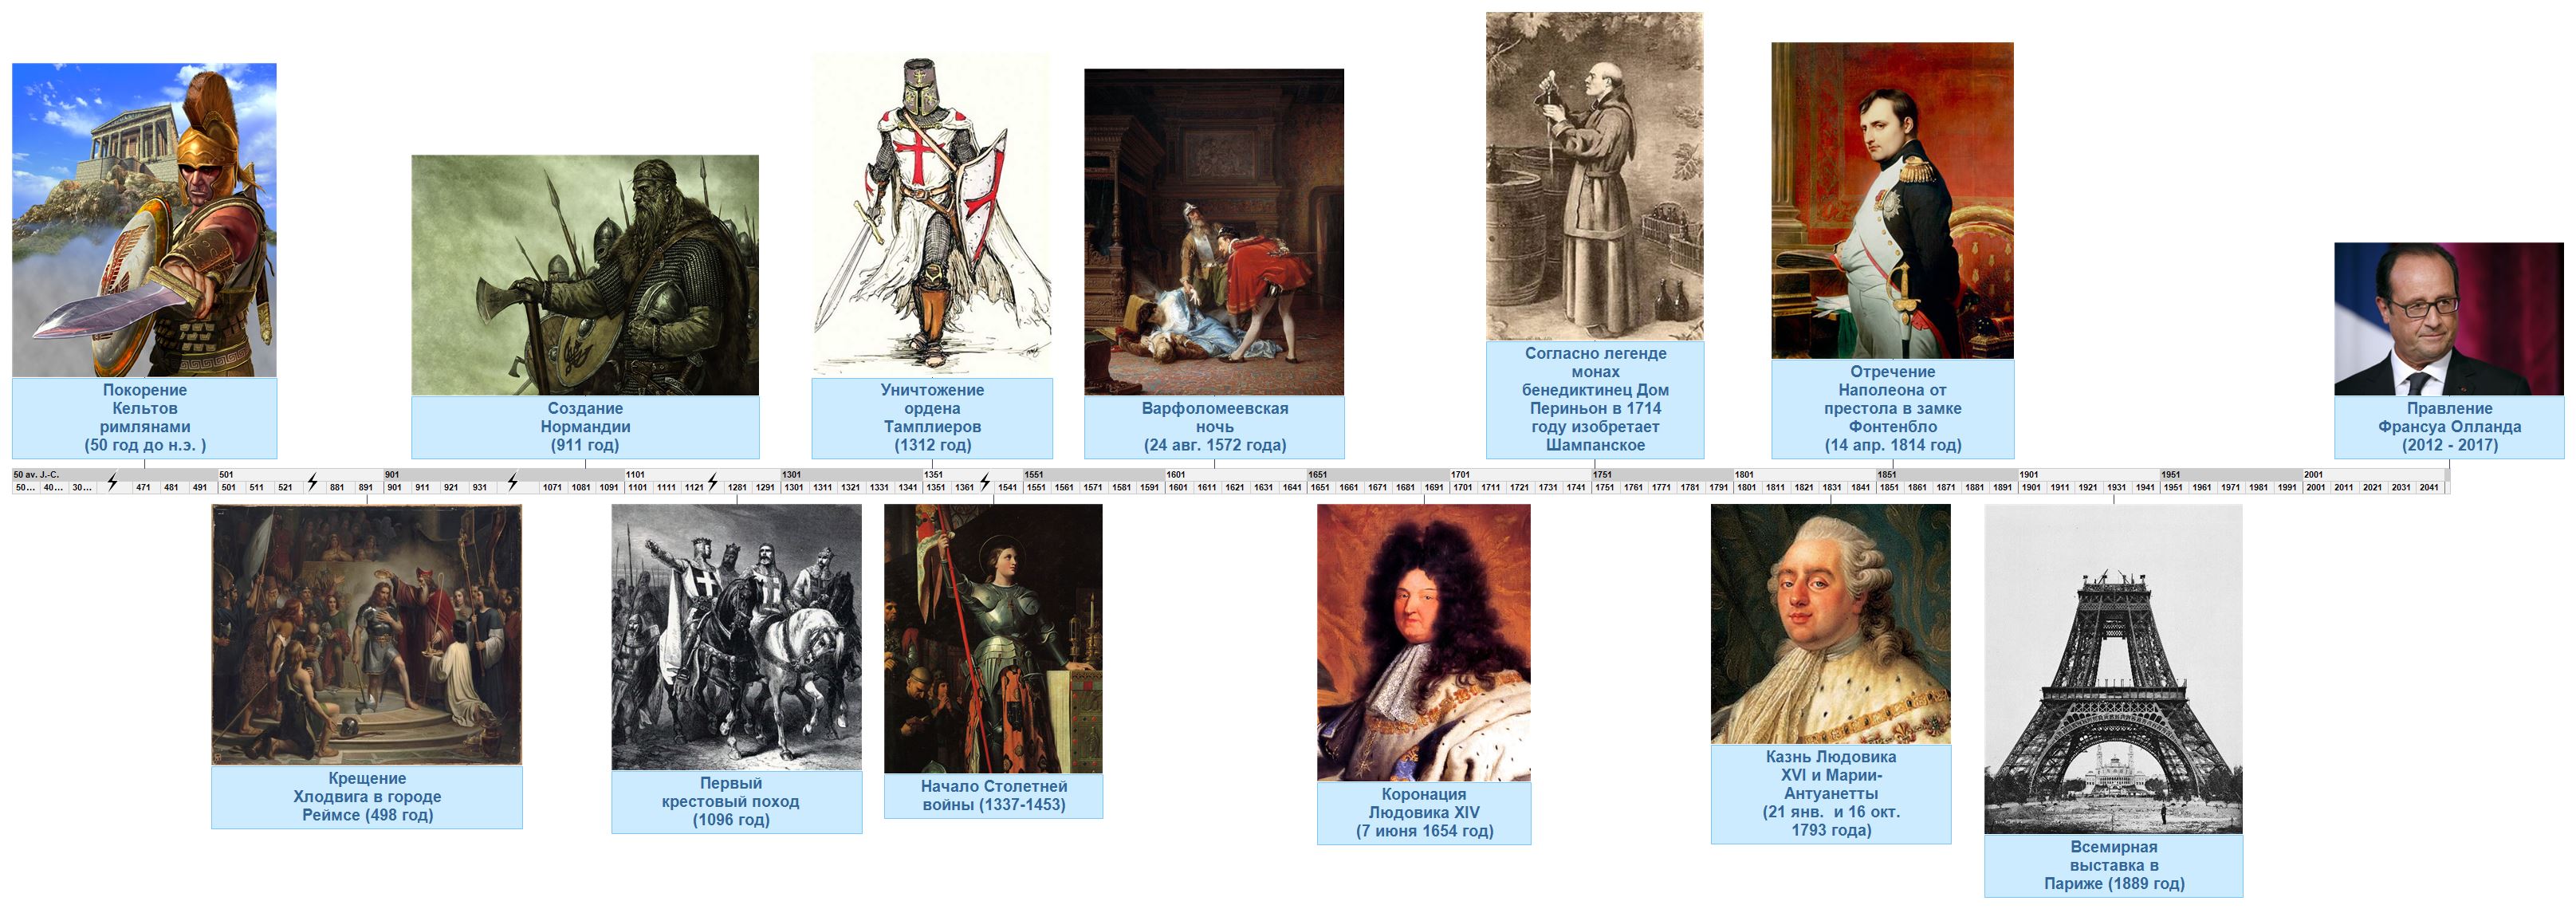 Главные события и персонажи Французской истории